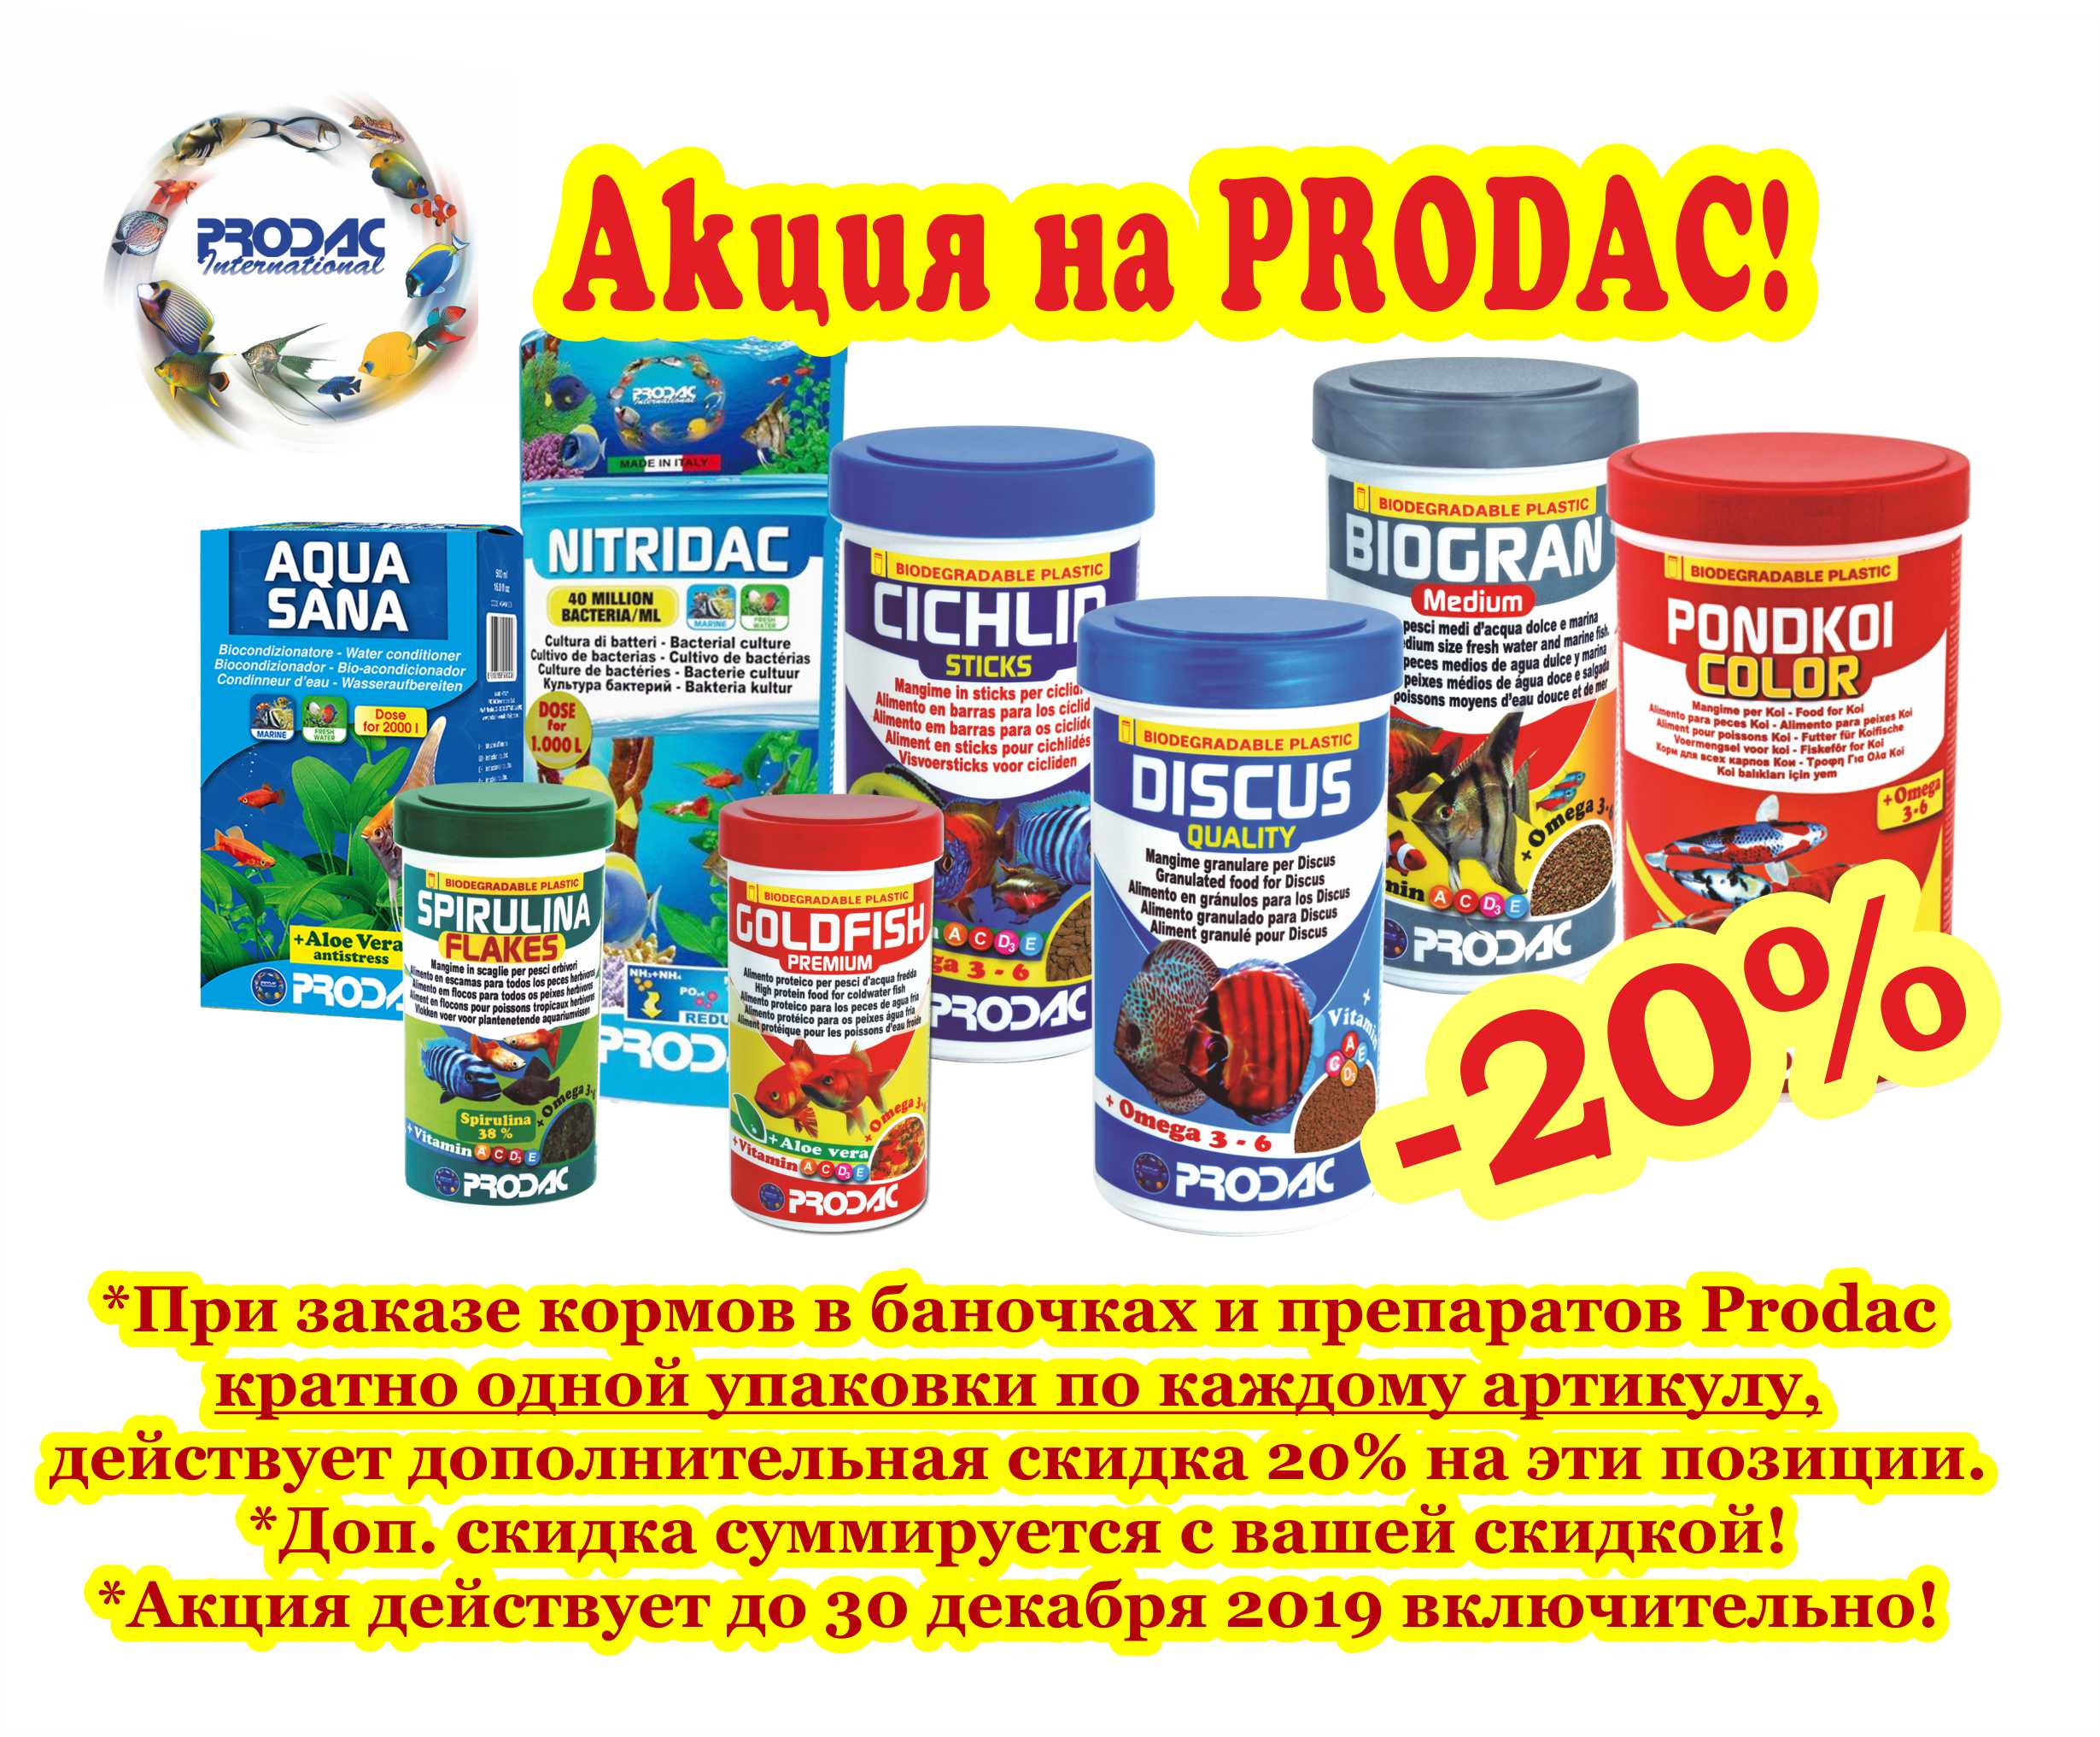 Акция на Prodac дополнительная скидка 20%